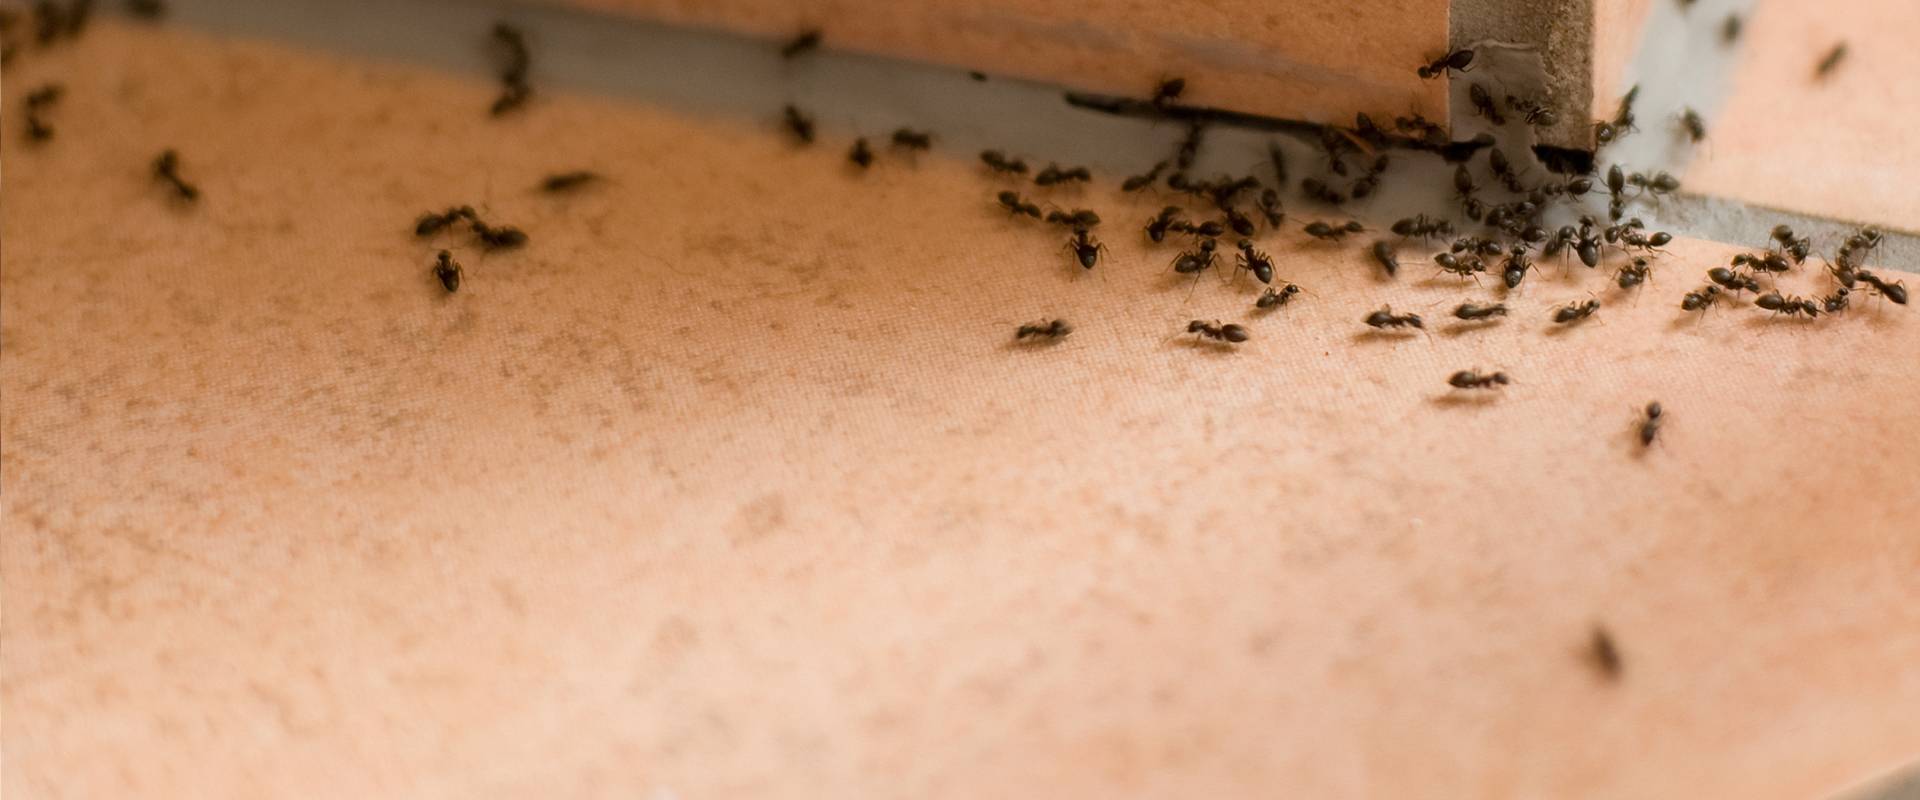 ants on a bathroom floor